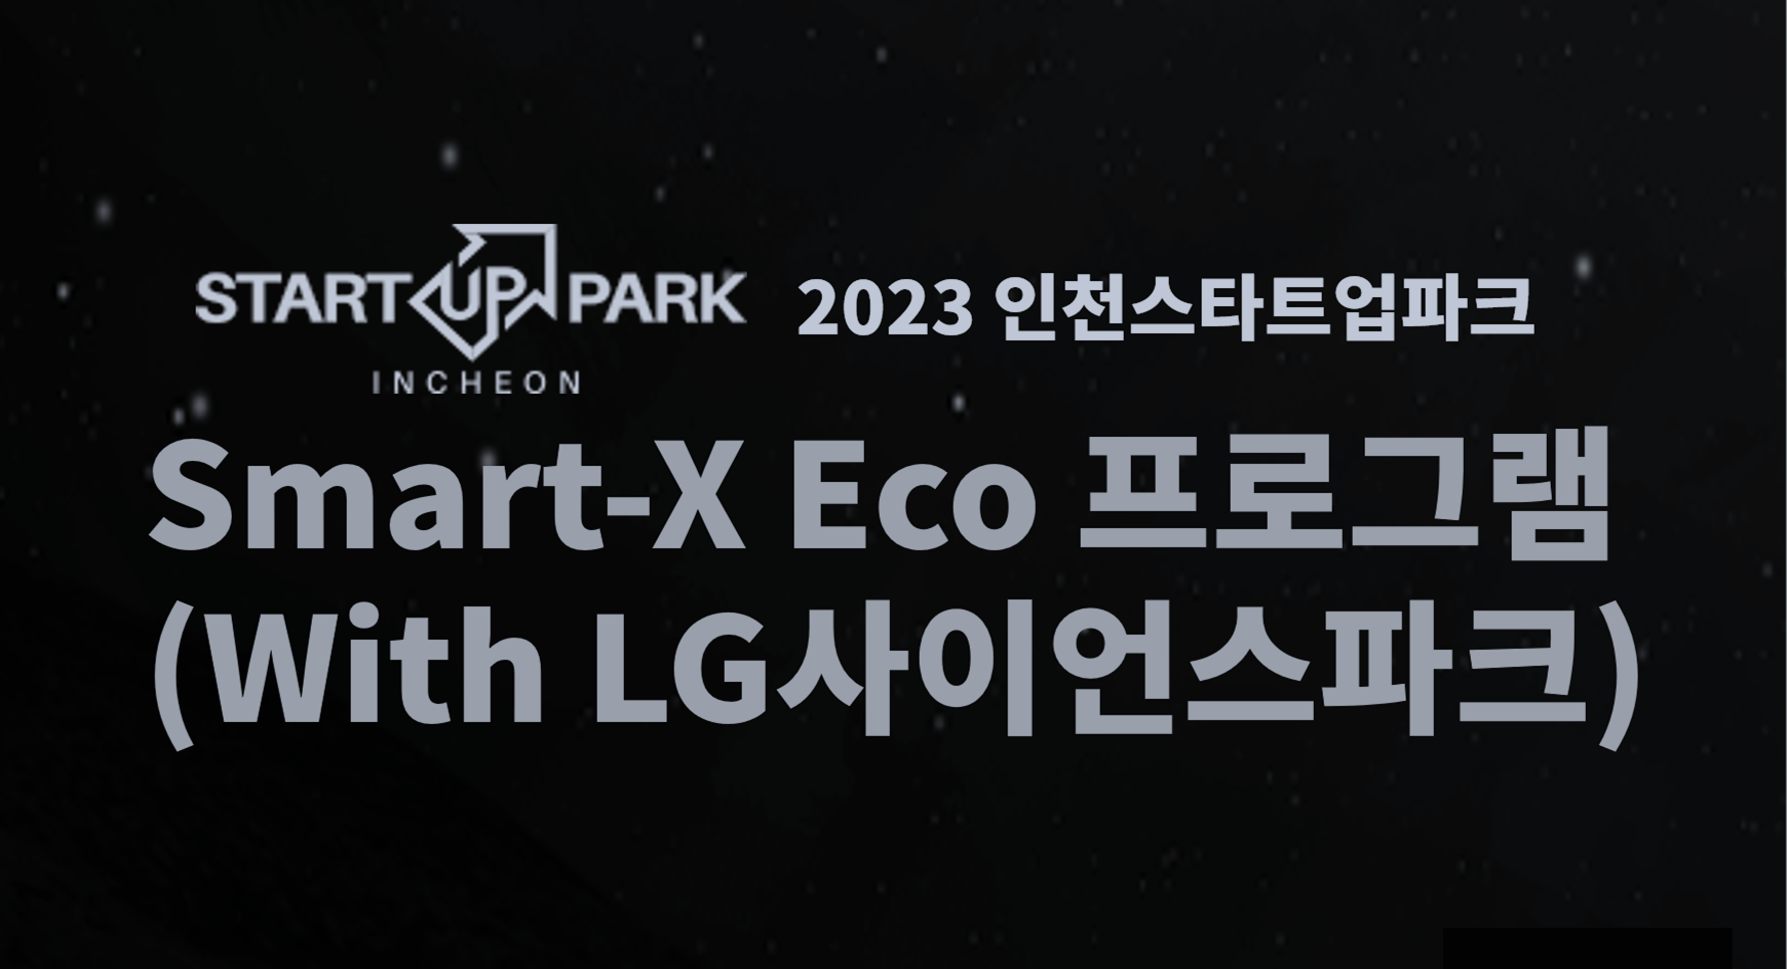 인천스타트업파크 Smart-X Eco(LG사이언스파크) 프로그램 참가 기업 모집